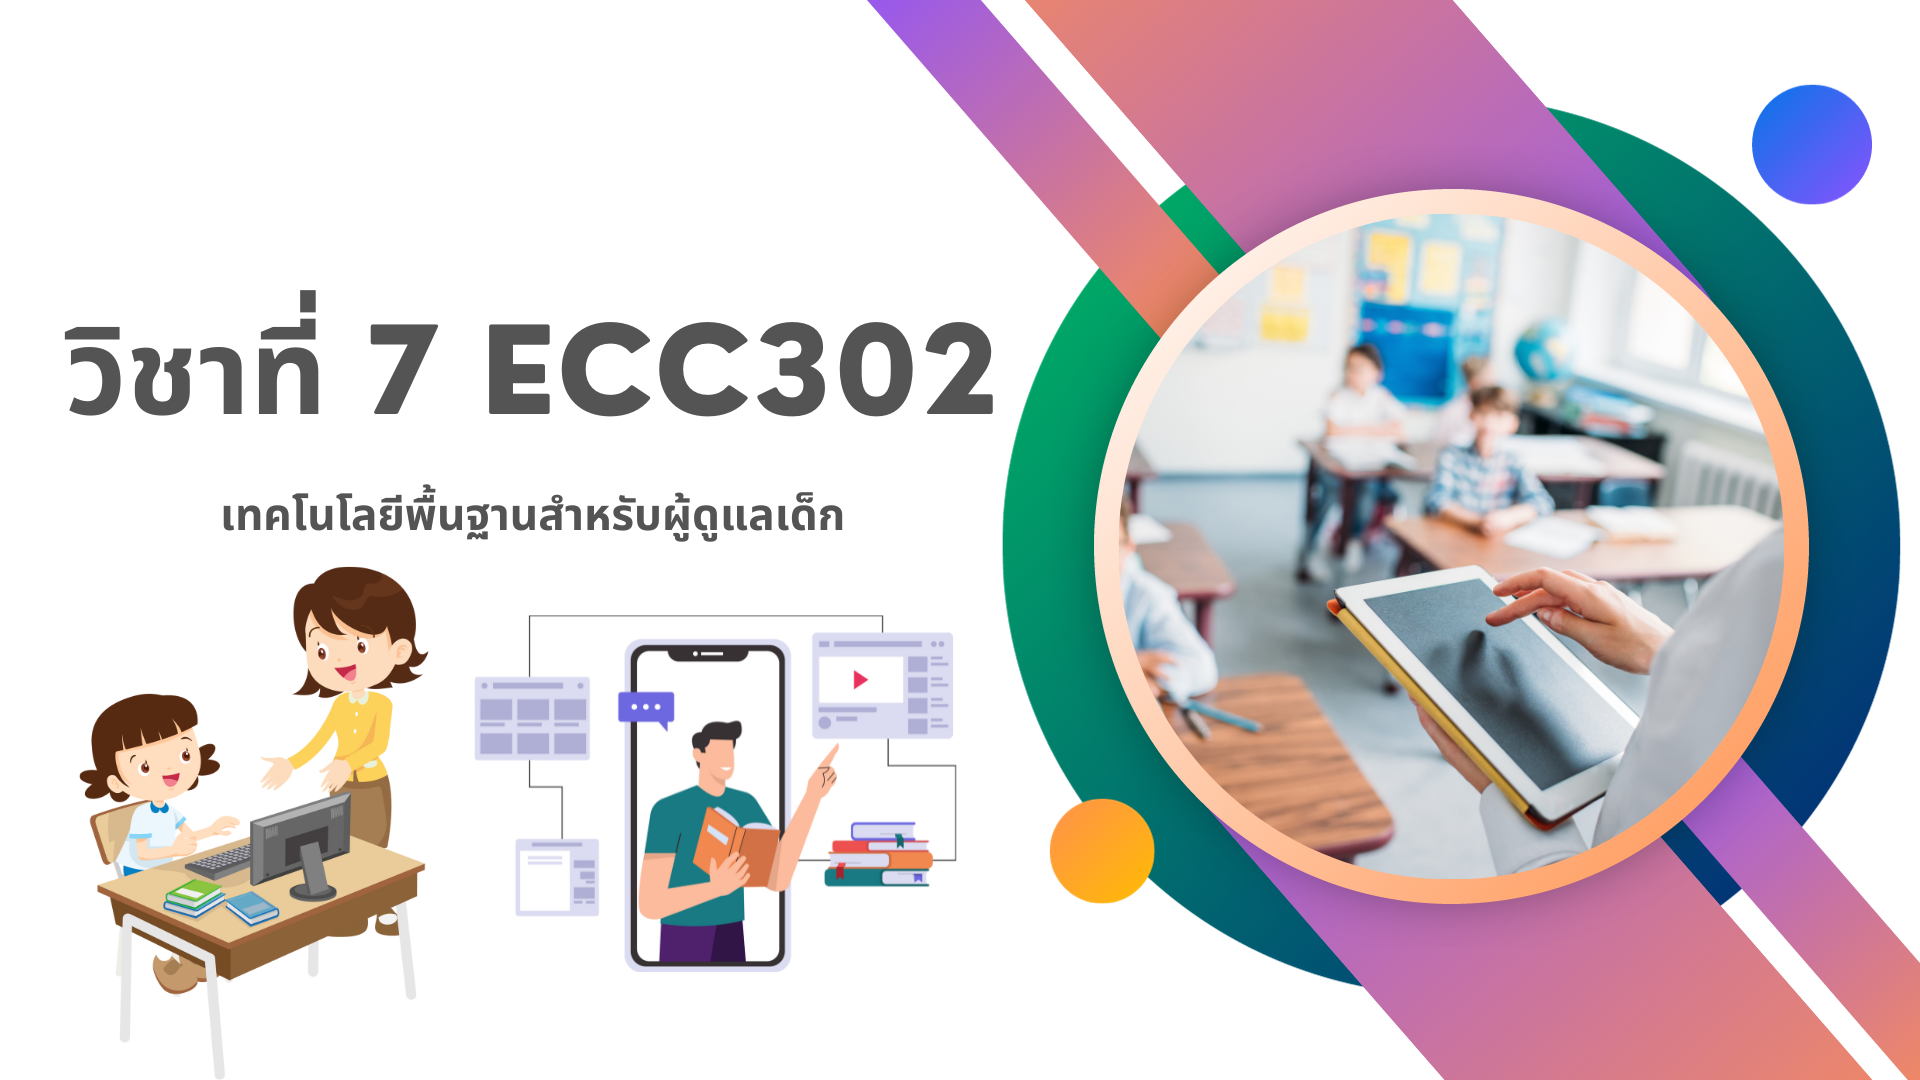 ECC302:  เทคโนโลยีพื้นฐานสำหรับผู้ดูแลเด็ก